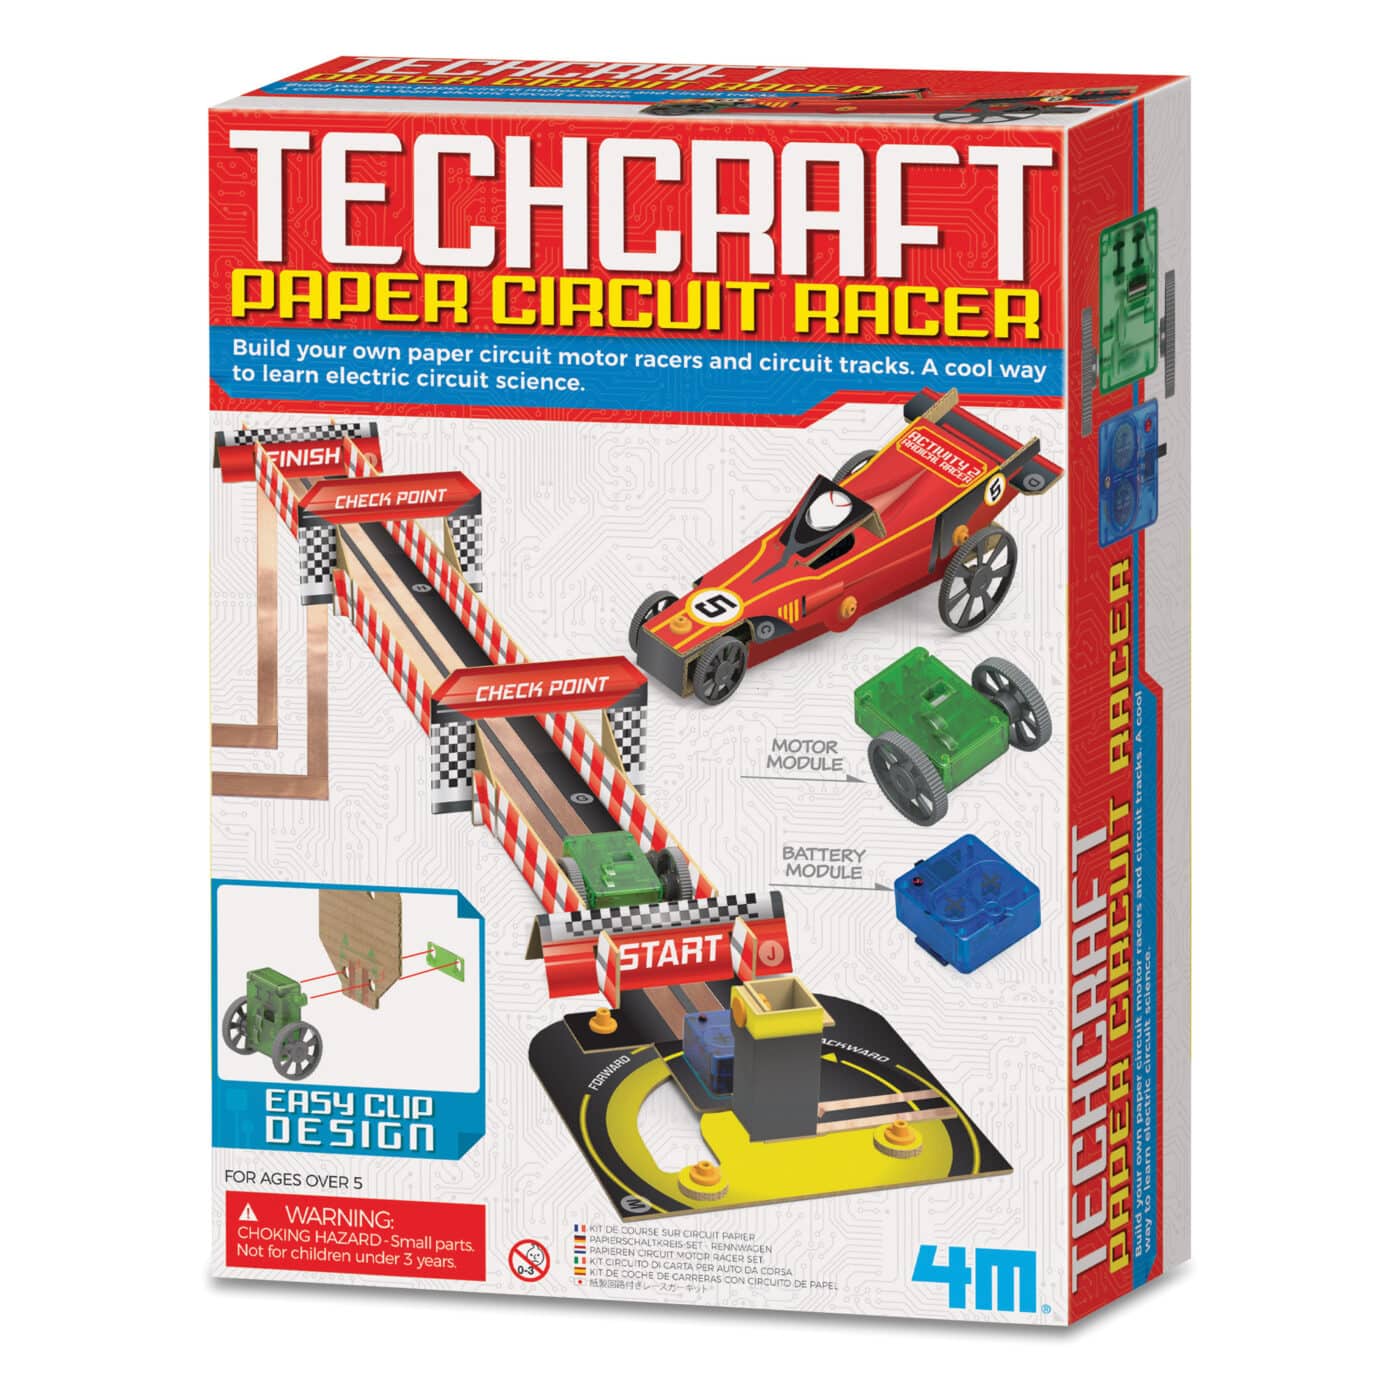 4M Techdraft Paper Circuit Racer